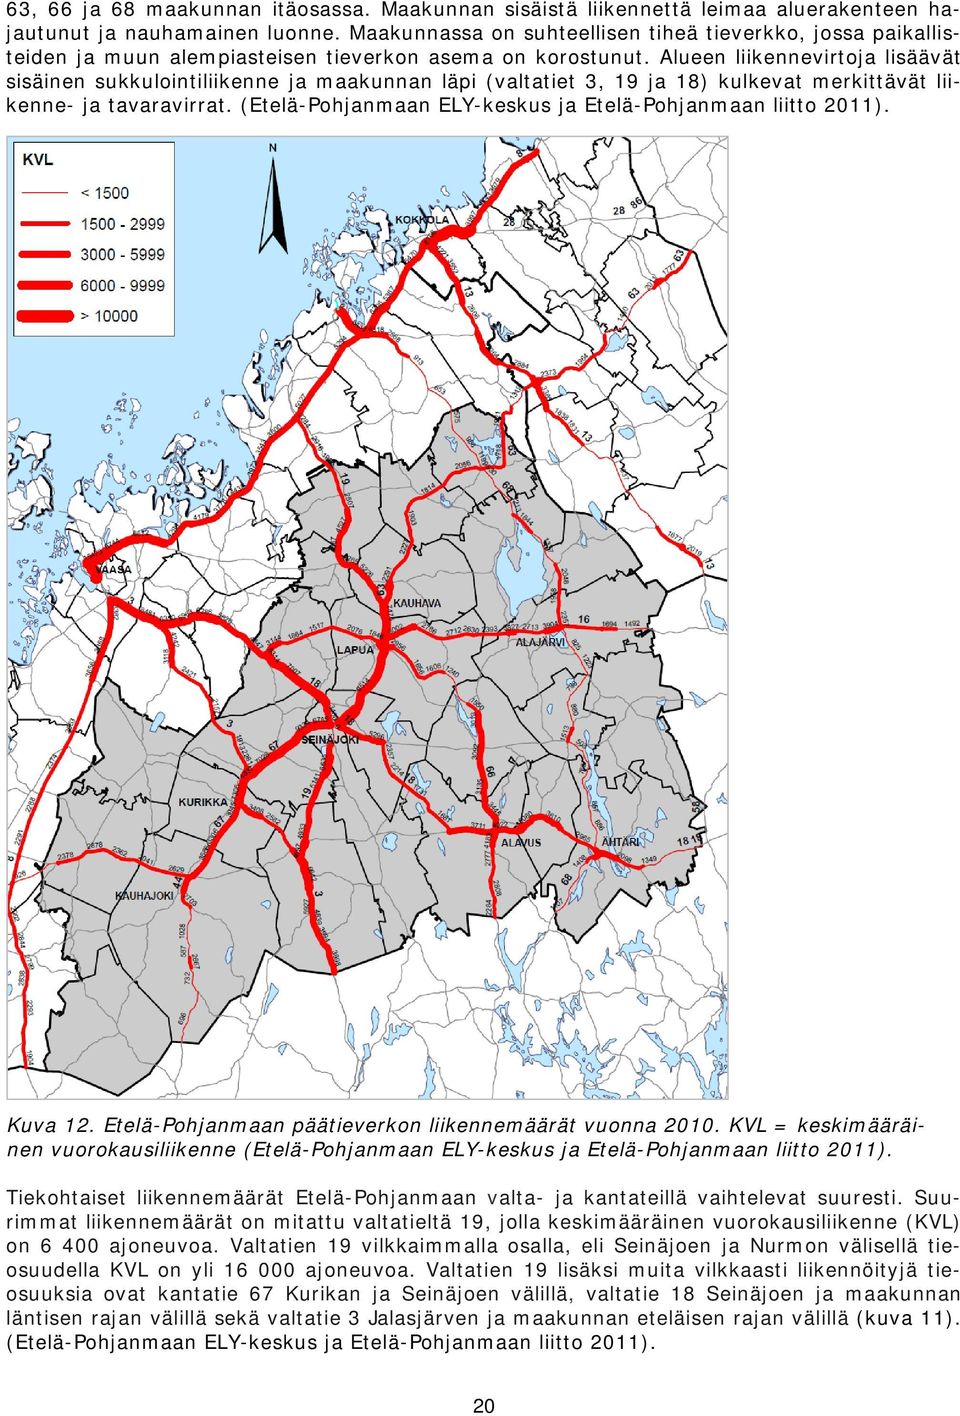 Alueen liikennevirtoja lisäävät sisäinen sukkulointiliikenne ja maakunnan läpi (valtatiet 3, 19 ja 18) kulkevat merkittävät liikenne- ja tavaravirrat.